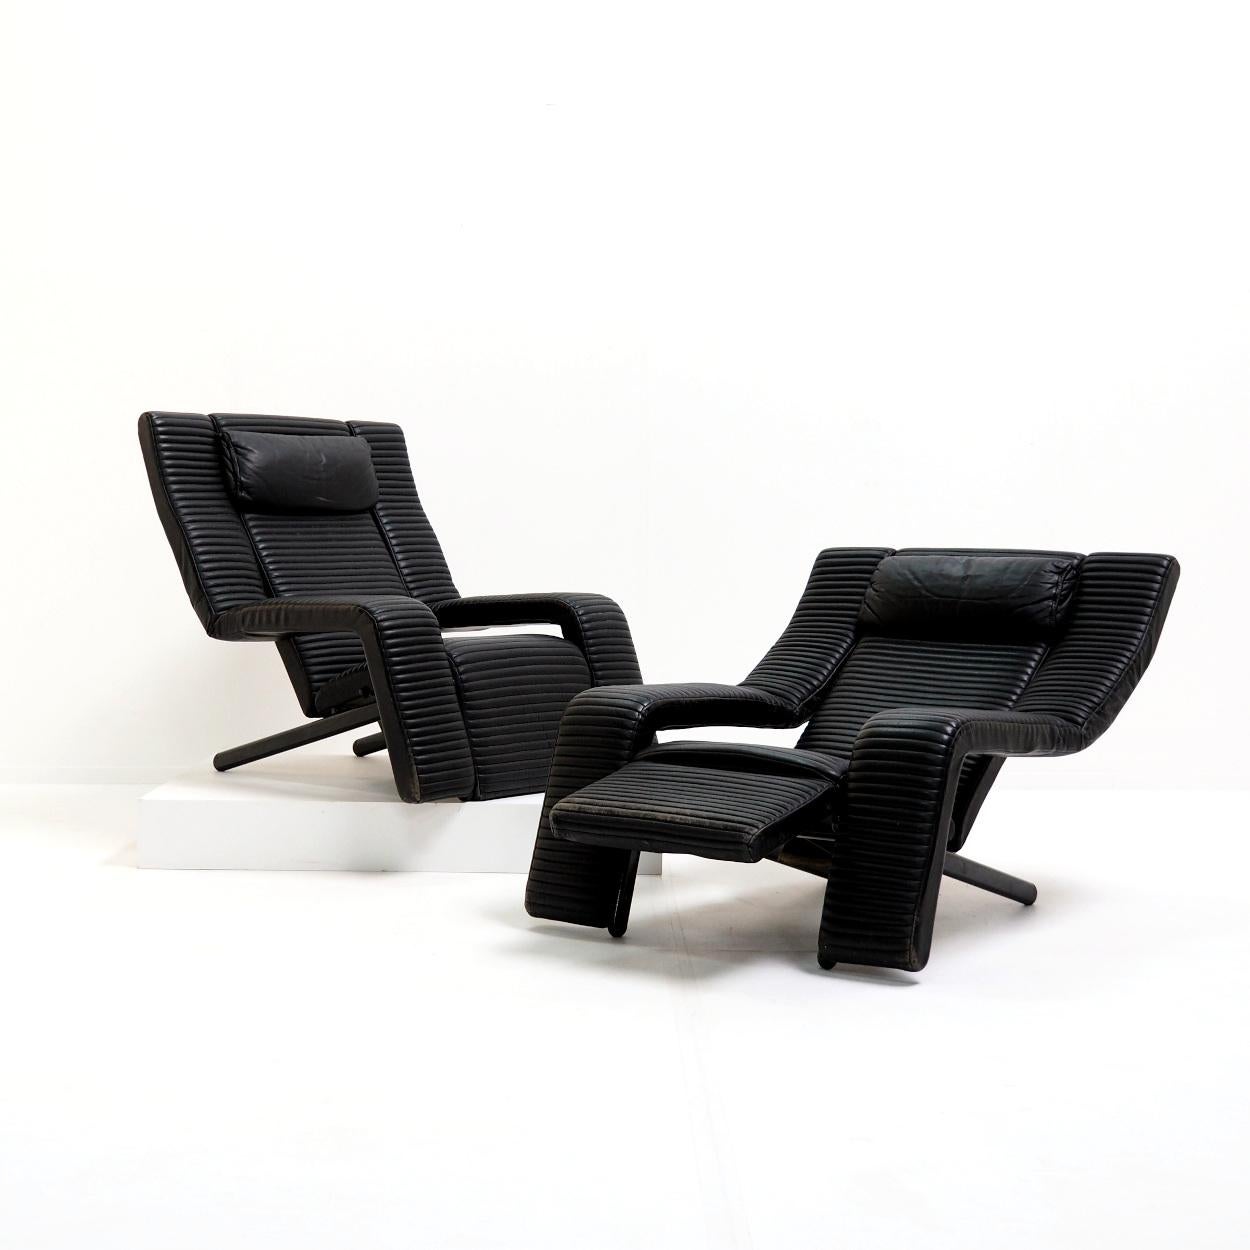 Ensemble de chaises longues réglables postmodernes conçues en 1985 par Tittina Ammannati & Giampiero Vitteli. Les sièges sont recouverts de cuir noir surpiqué et dotés d'une structure métallique robuste qui leur permet de s'incliner et d'être